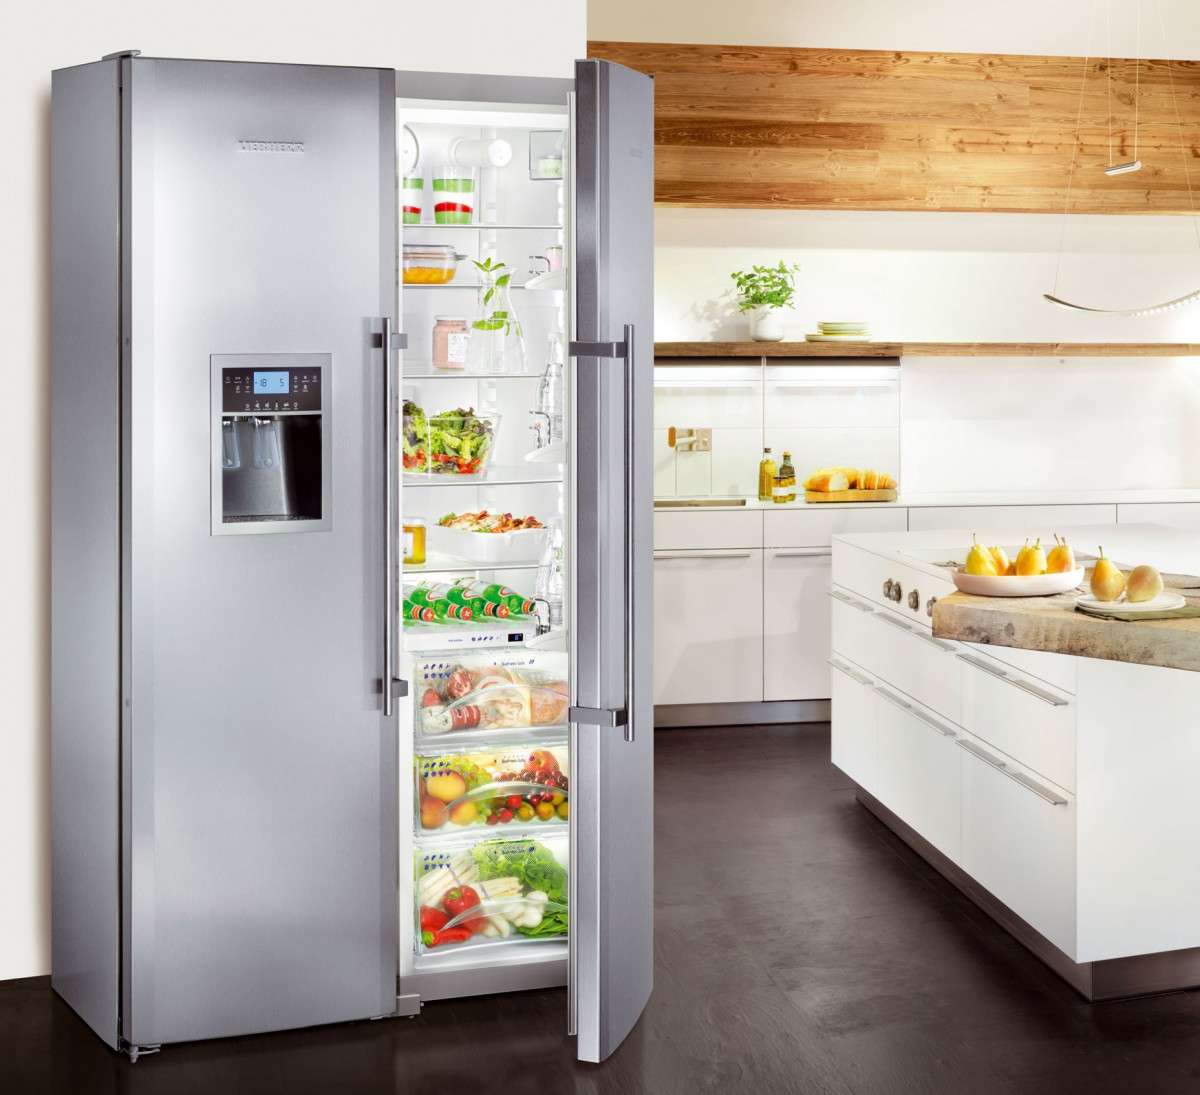 ТОП-10 лучших марок холодильников конца 2020 года